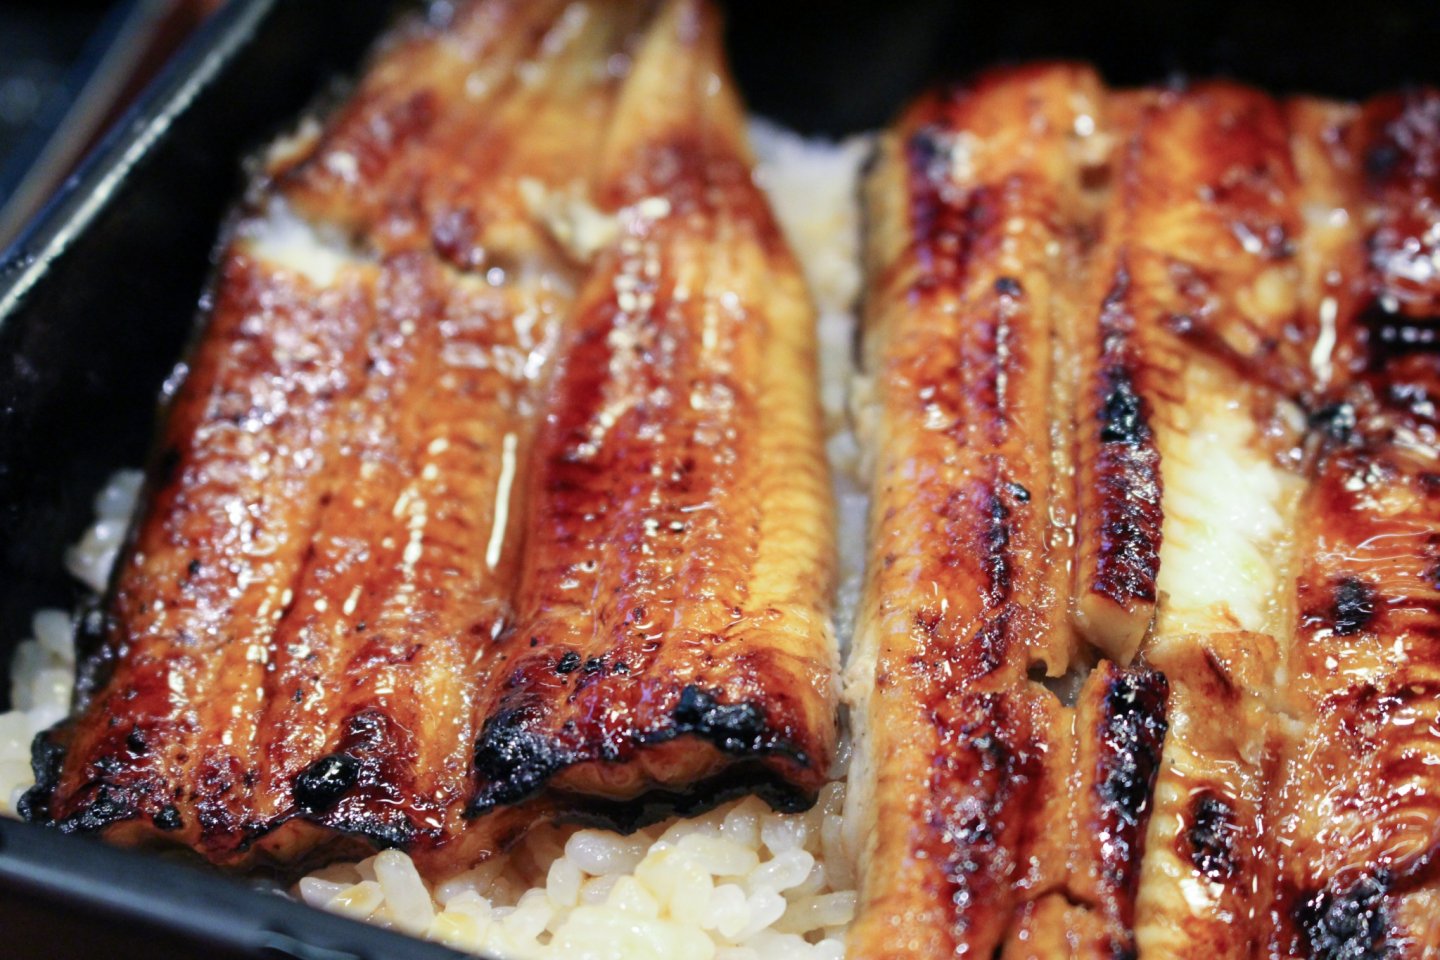 Jo-unaju (grilled eel on rice)